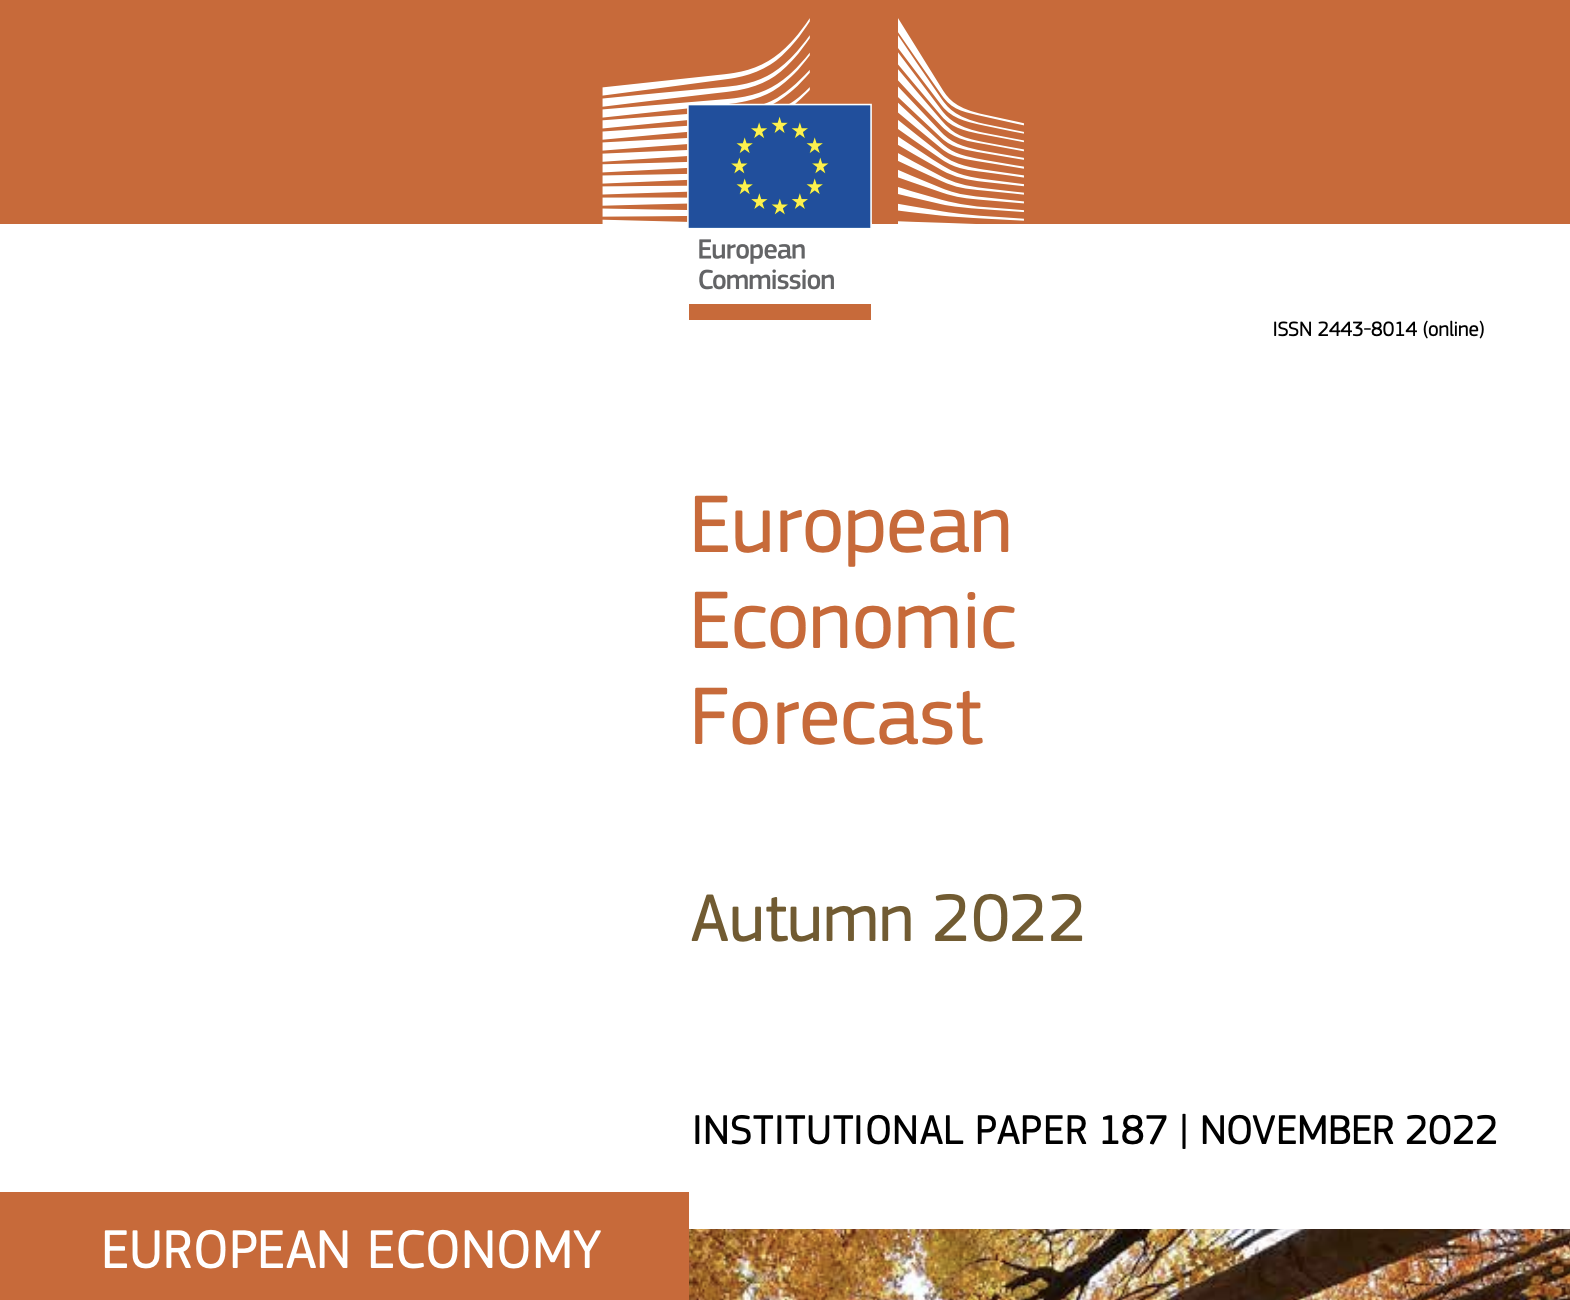 Economia UE in recessione già nel 4° trimestre 2022